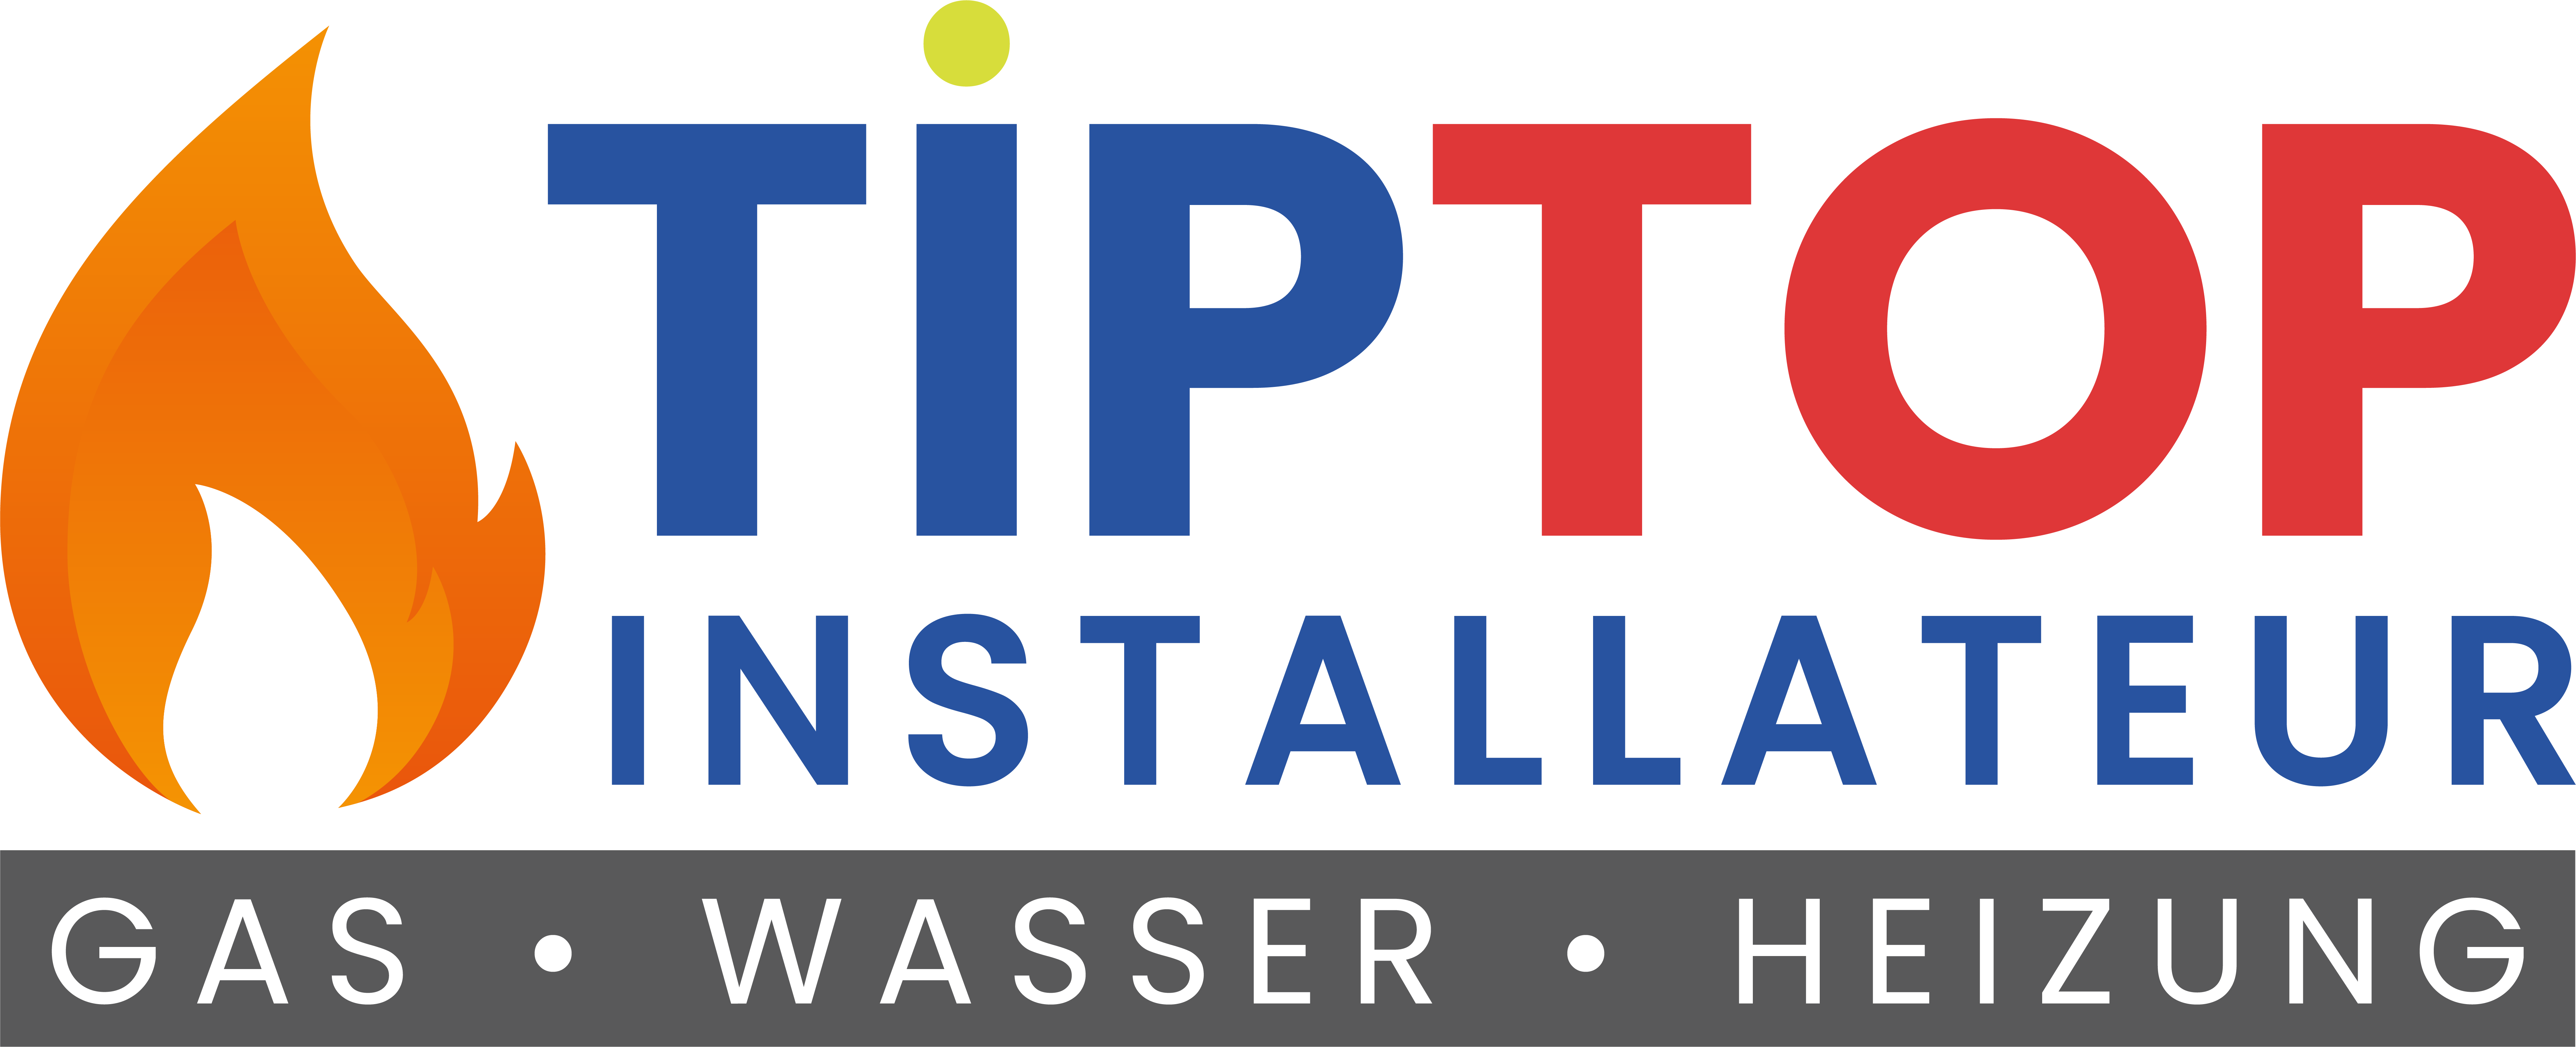 Tiptop Installateur ist der Experte für Sanitär und Heizung in Wien